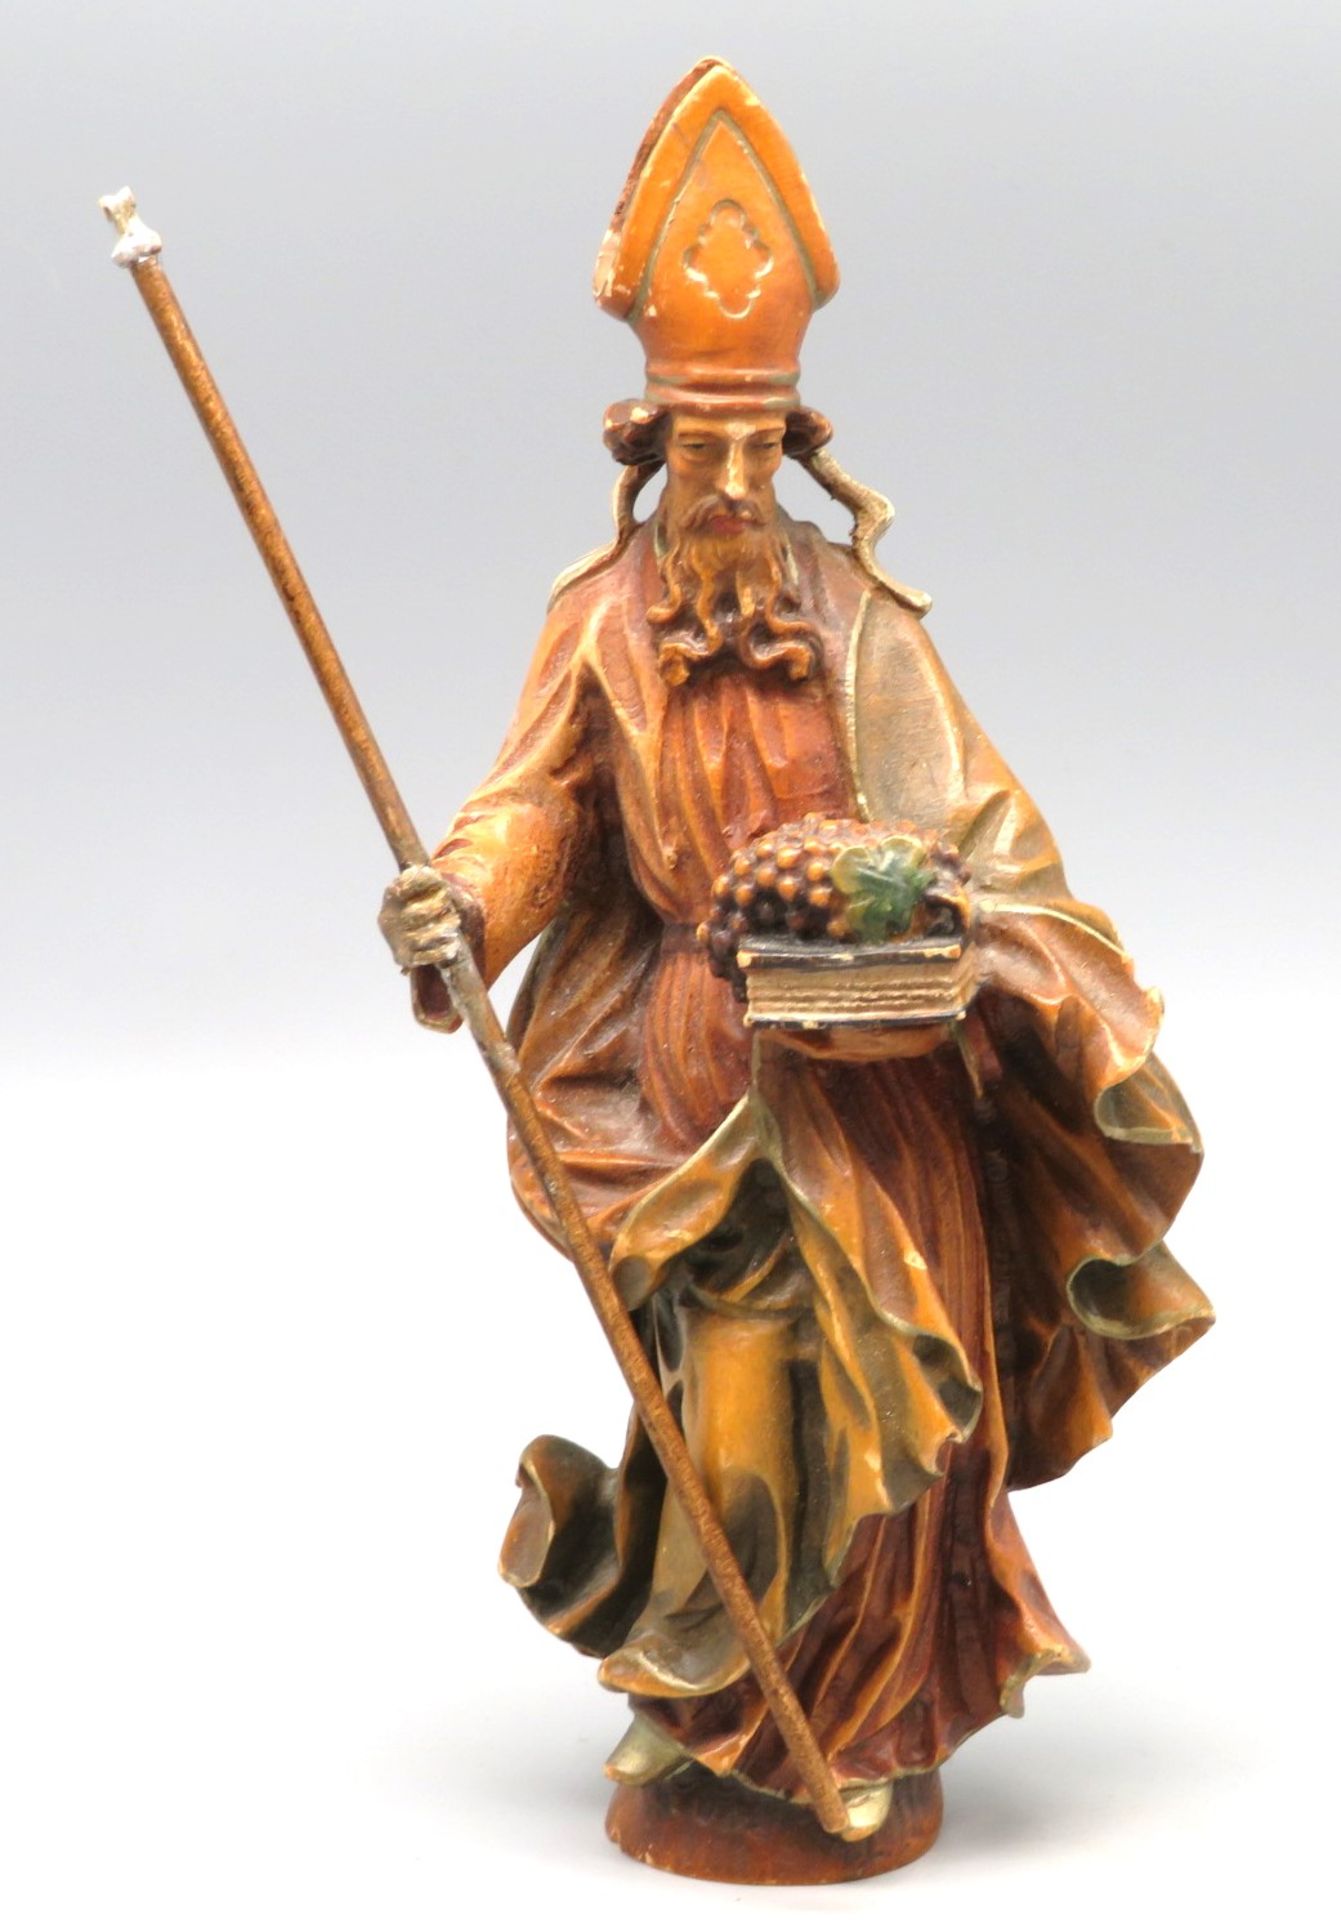 Statuette des Heiligen Urban, gem. "Eugen Langsel Oberammergau", Holz geschnitzt und farbig gefasst